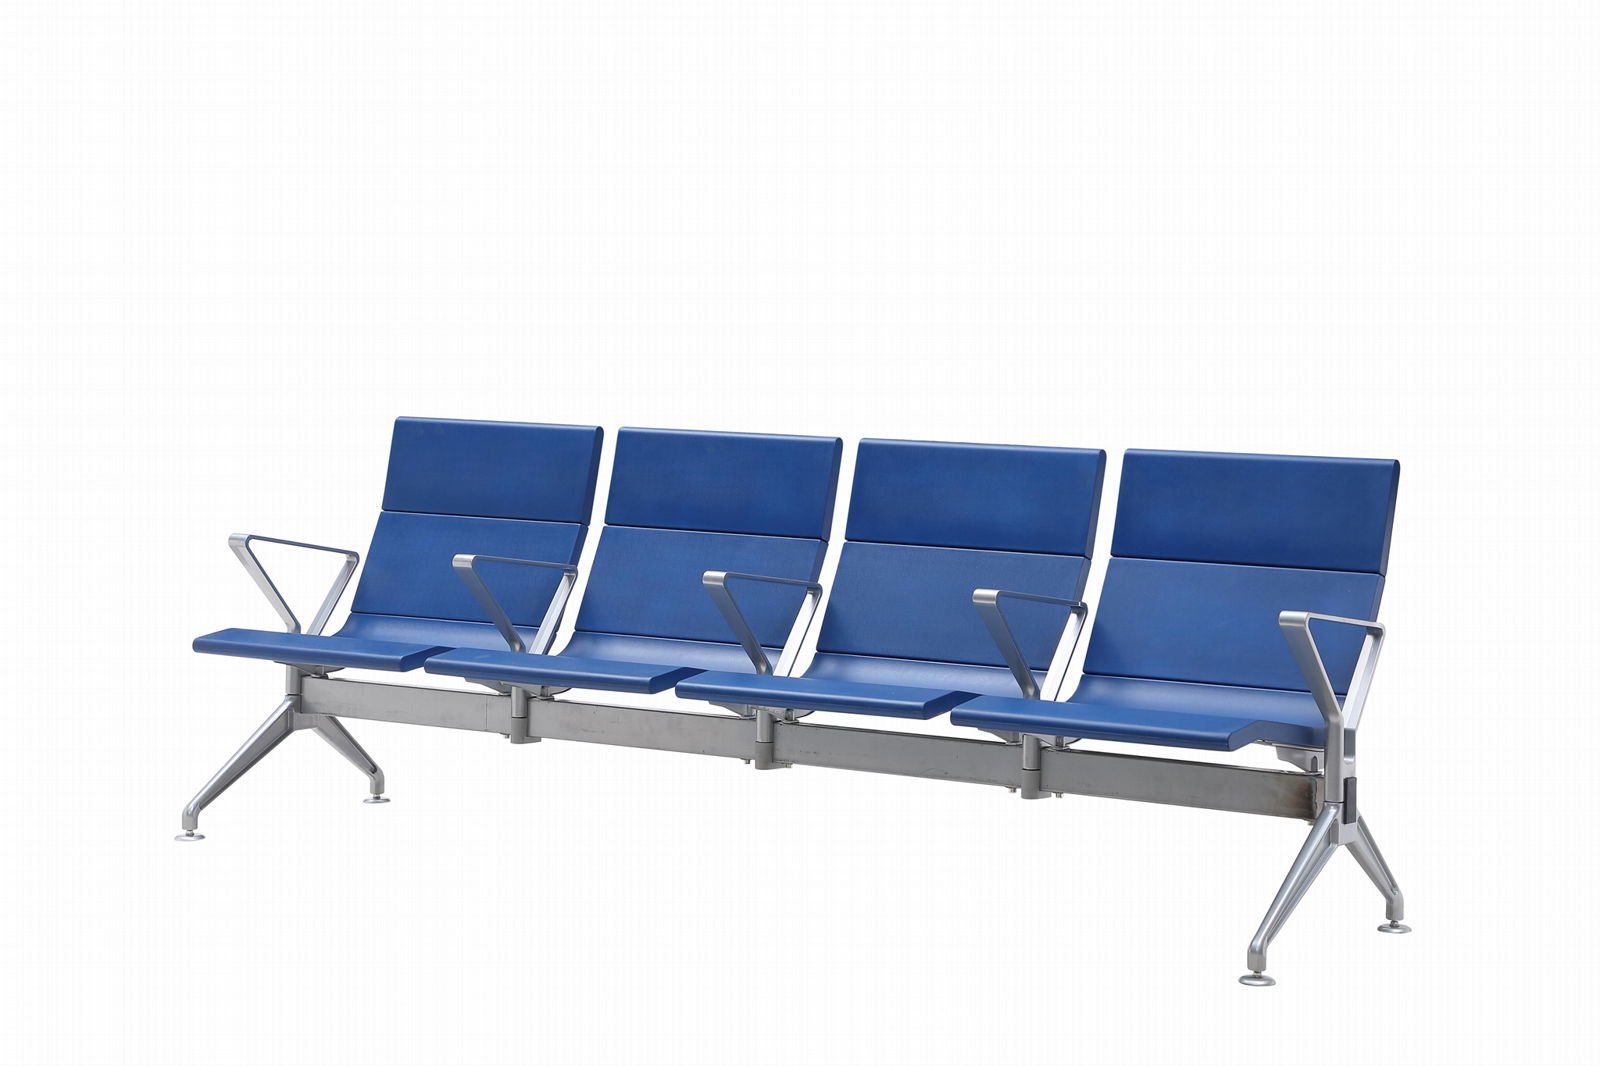 High Quality Polyurethane Pu Cushion Airport Chair Hospital Waiting Chair 2